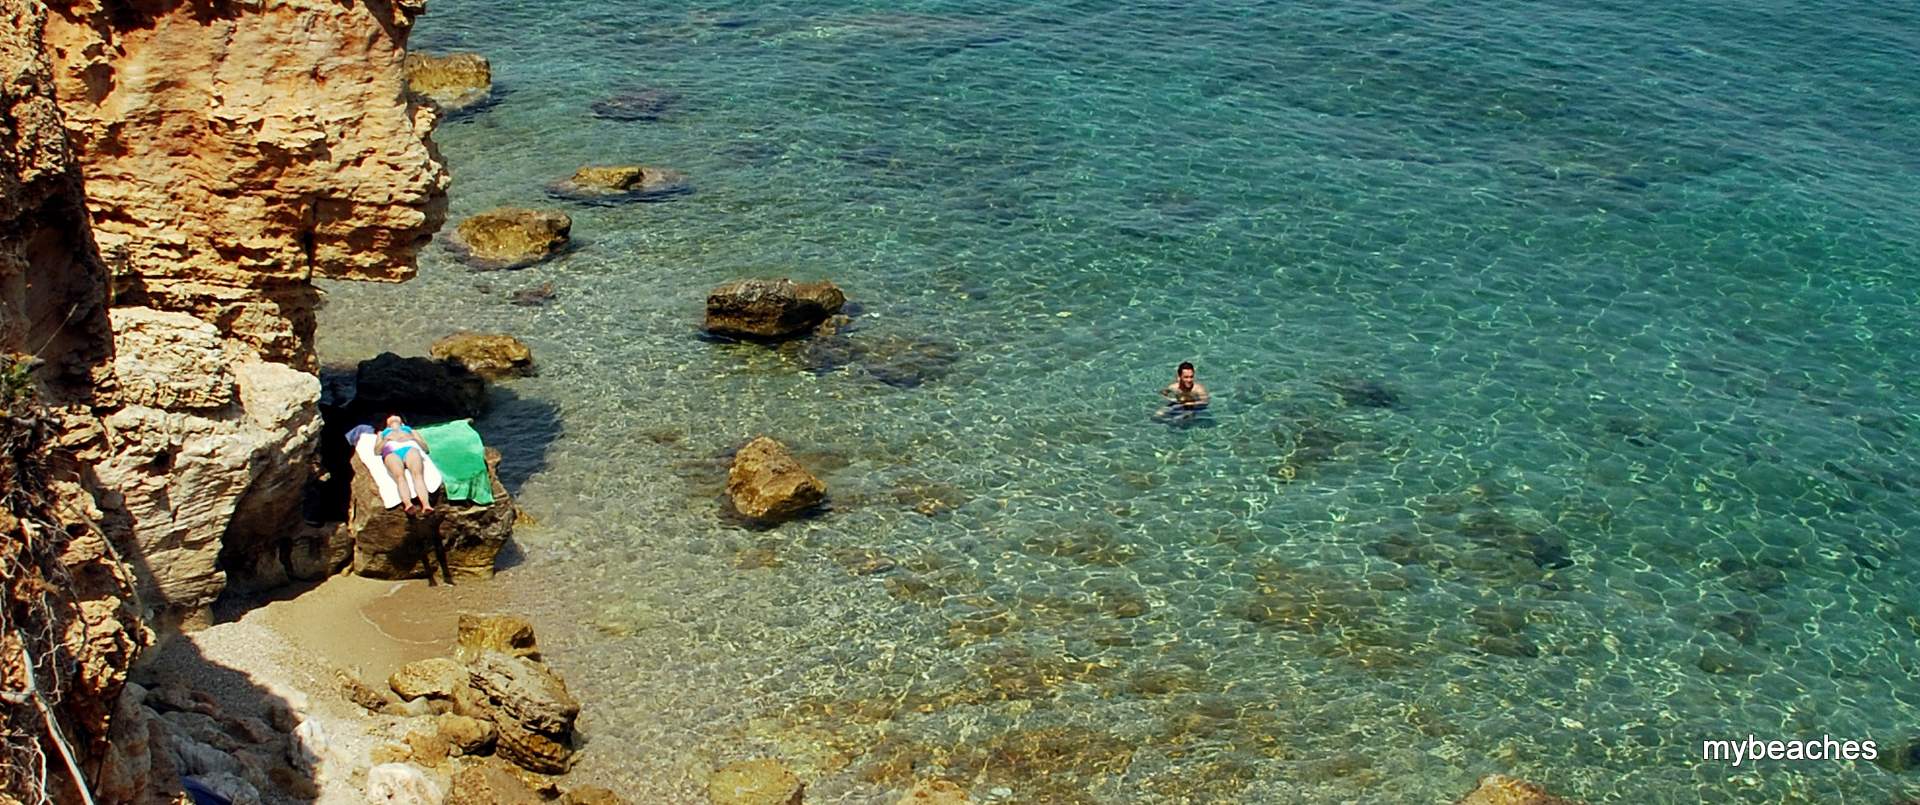 Βόθωνας παραλία, Κασσάνδρα, Χαλκιδική, Ελλάδα